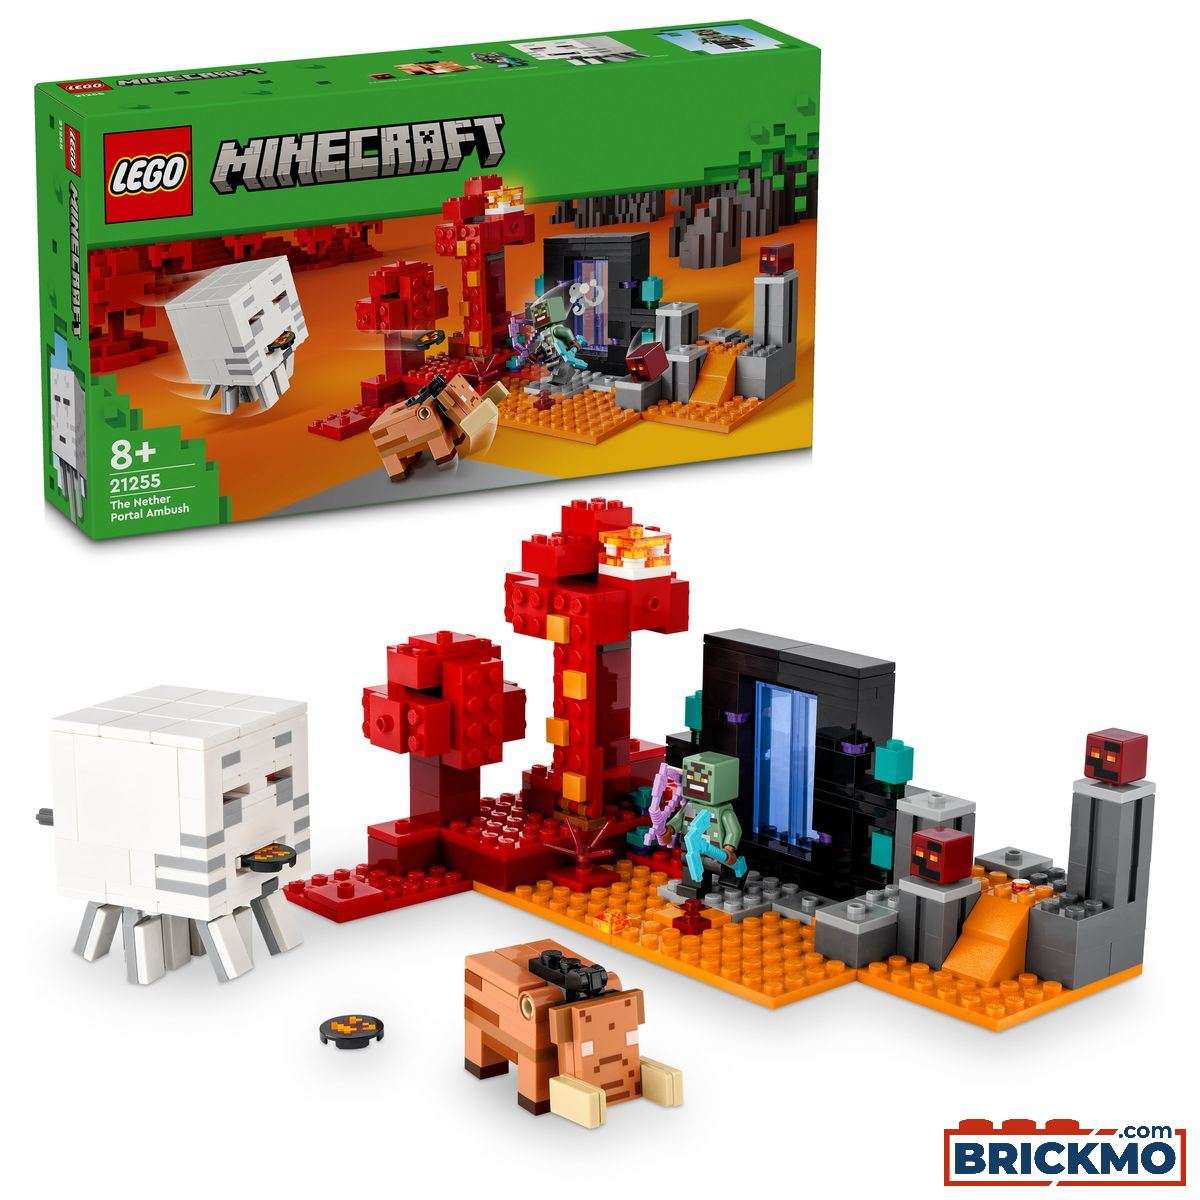 LEGO Minecraft 21255 Hinderlaag bij het Nether-portaal 21255